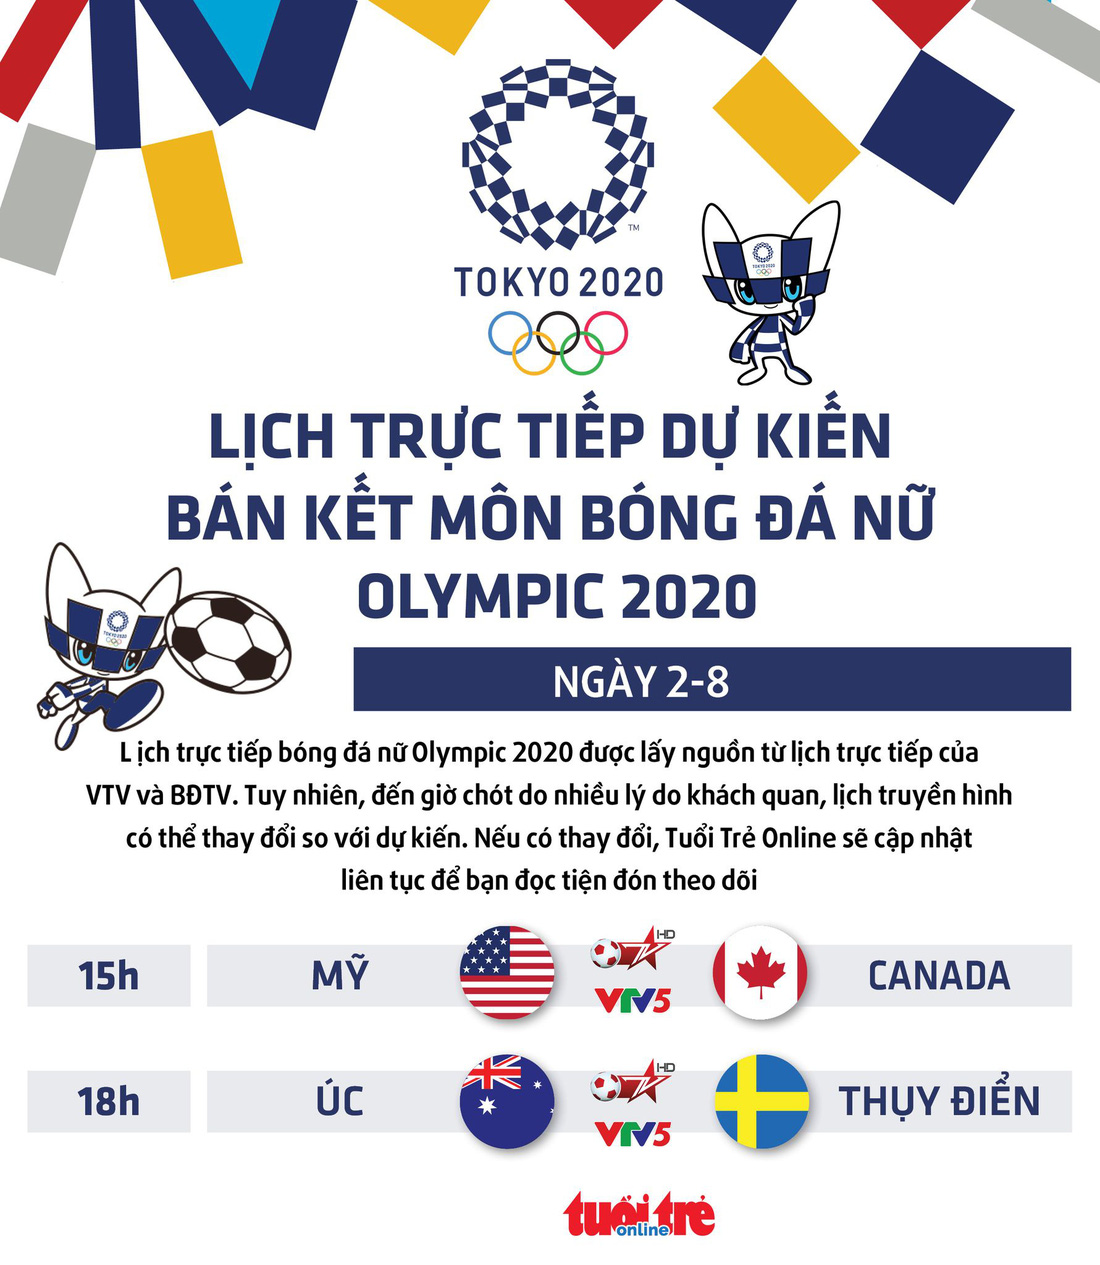 Lịch trực tiếp dự kiến bán kết bóng đá nữ Olympic 2020 trên VTV - Ảnh 1.